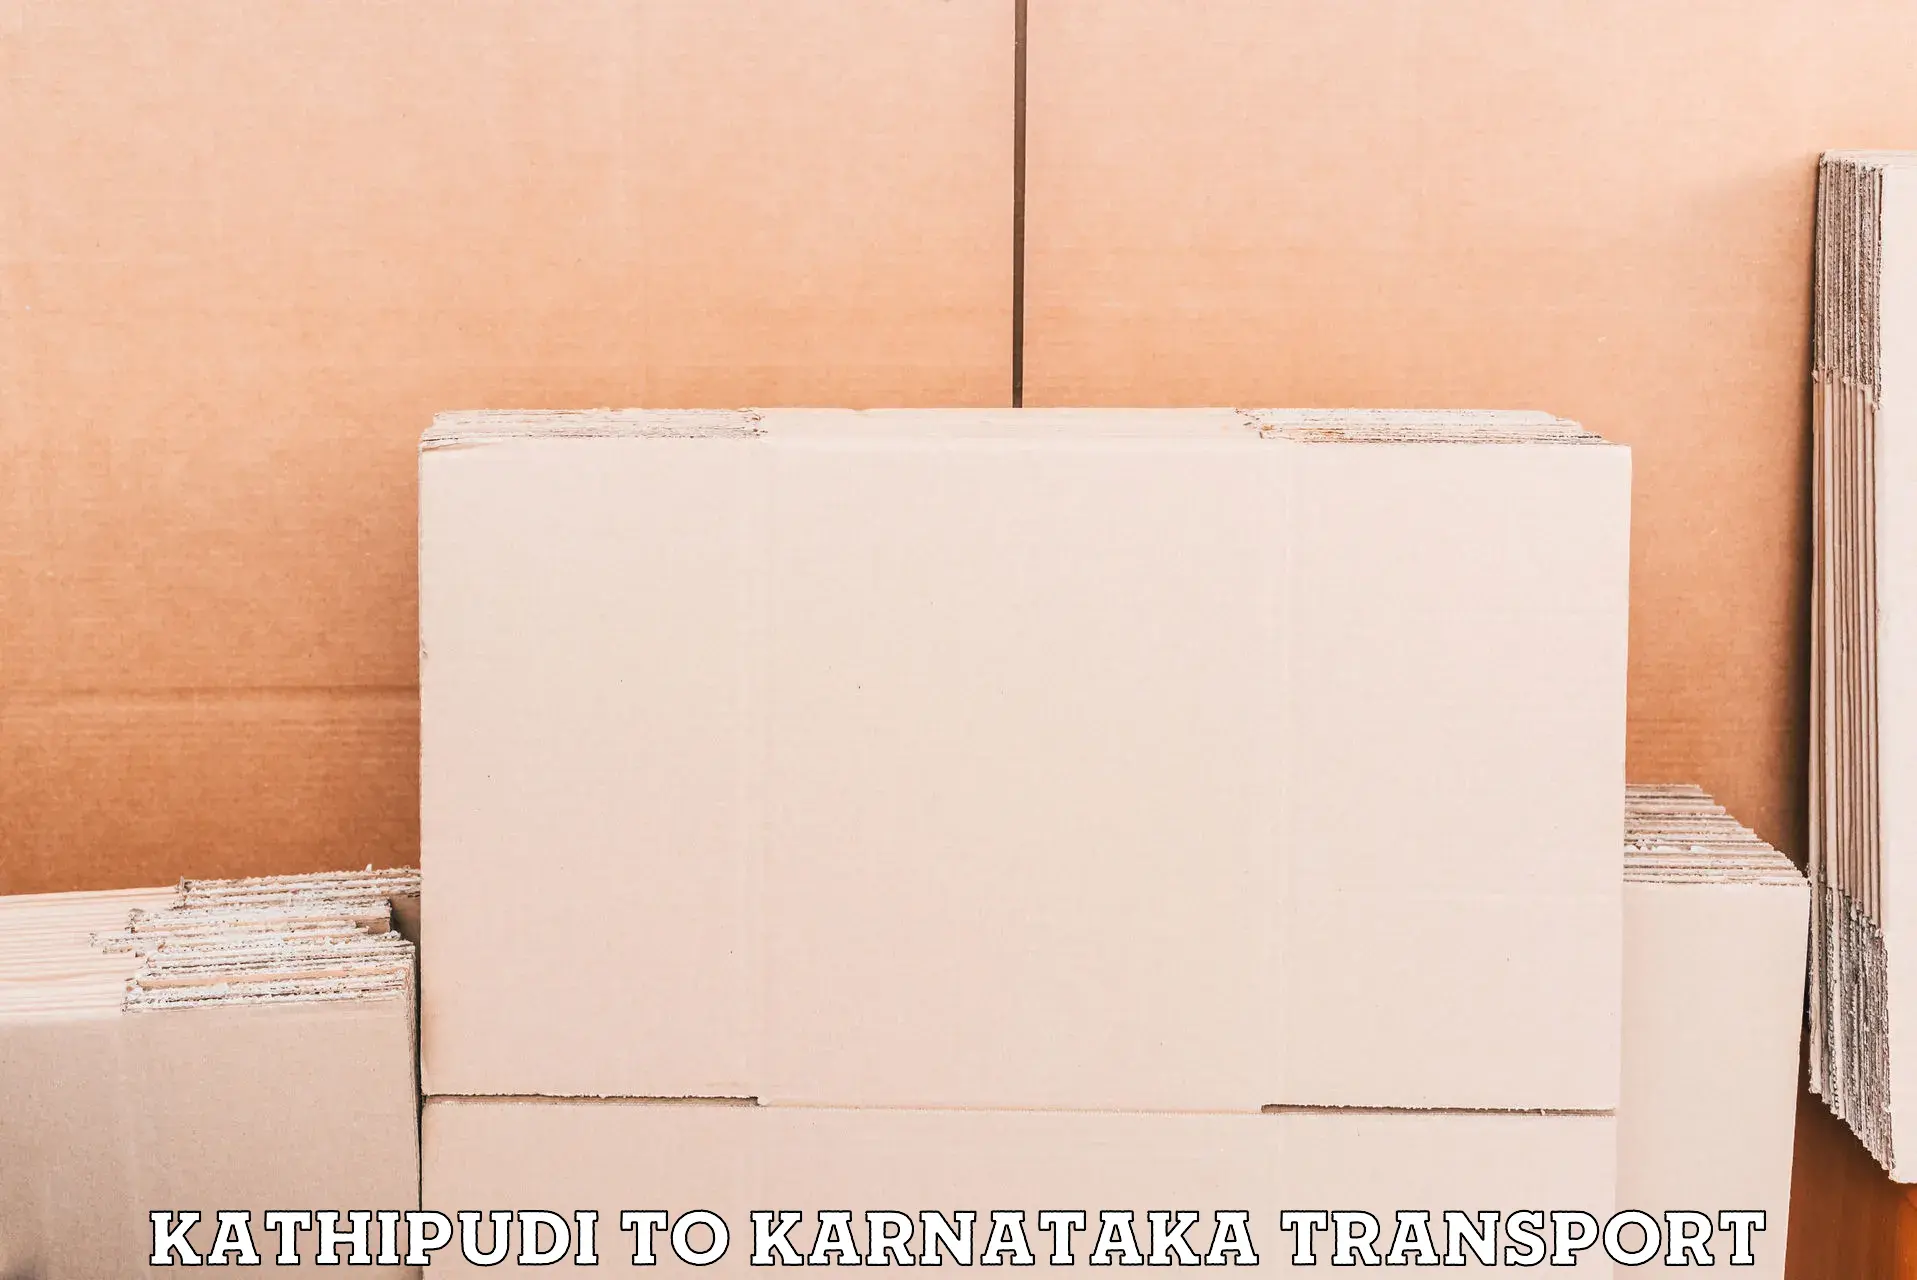 Daily transport service Kathipudi to Khanapur Karnataka